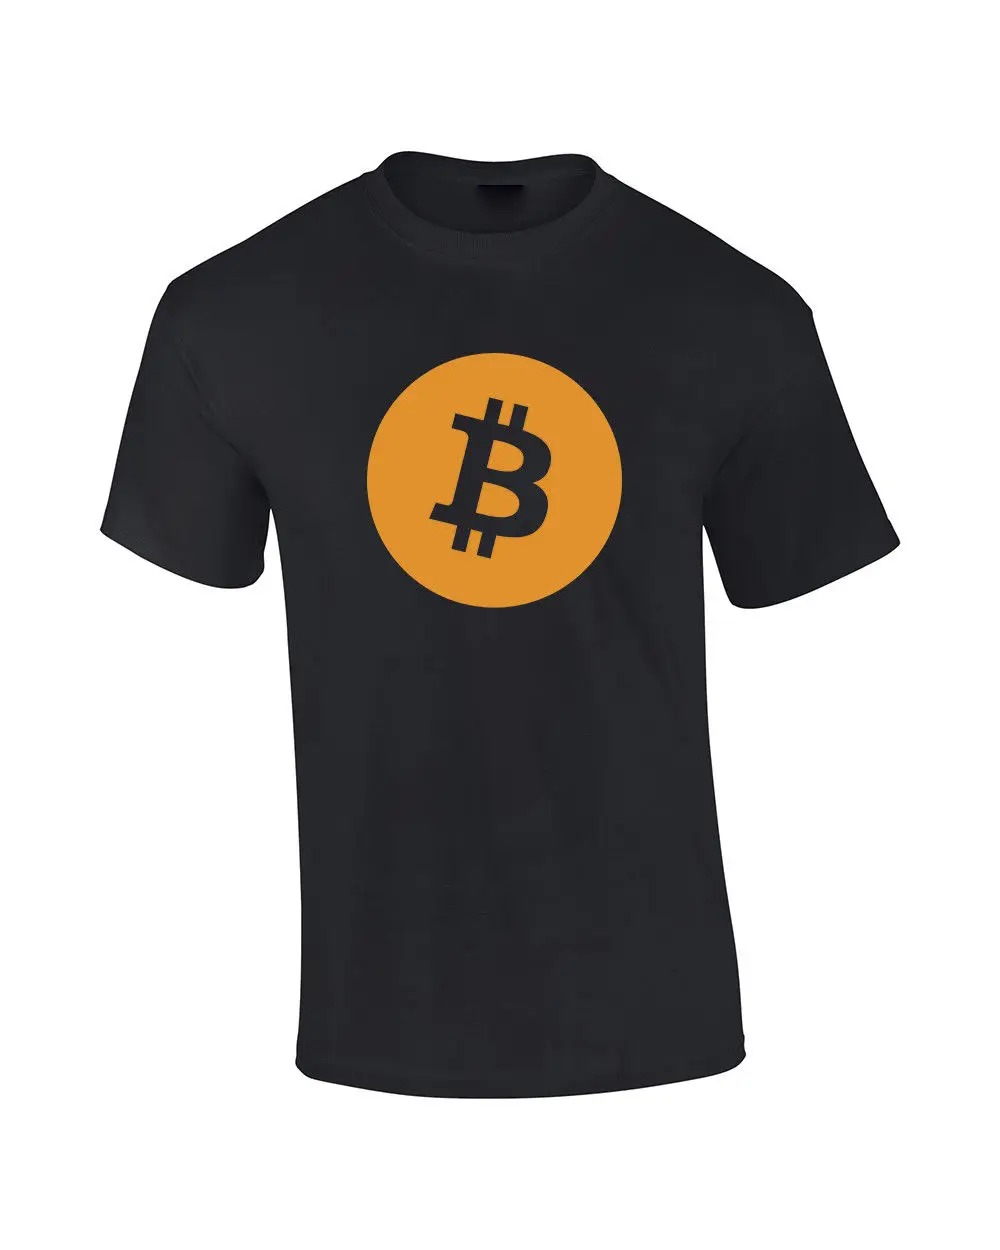 Bitcoin t shirts juegos para ganar bitcoins gratis